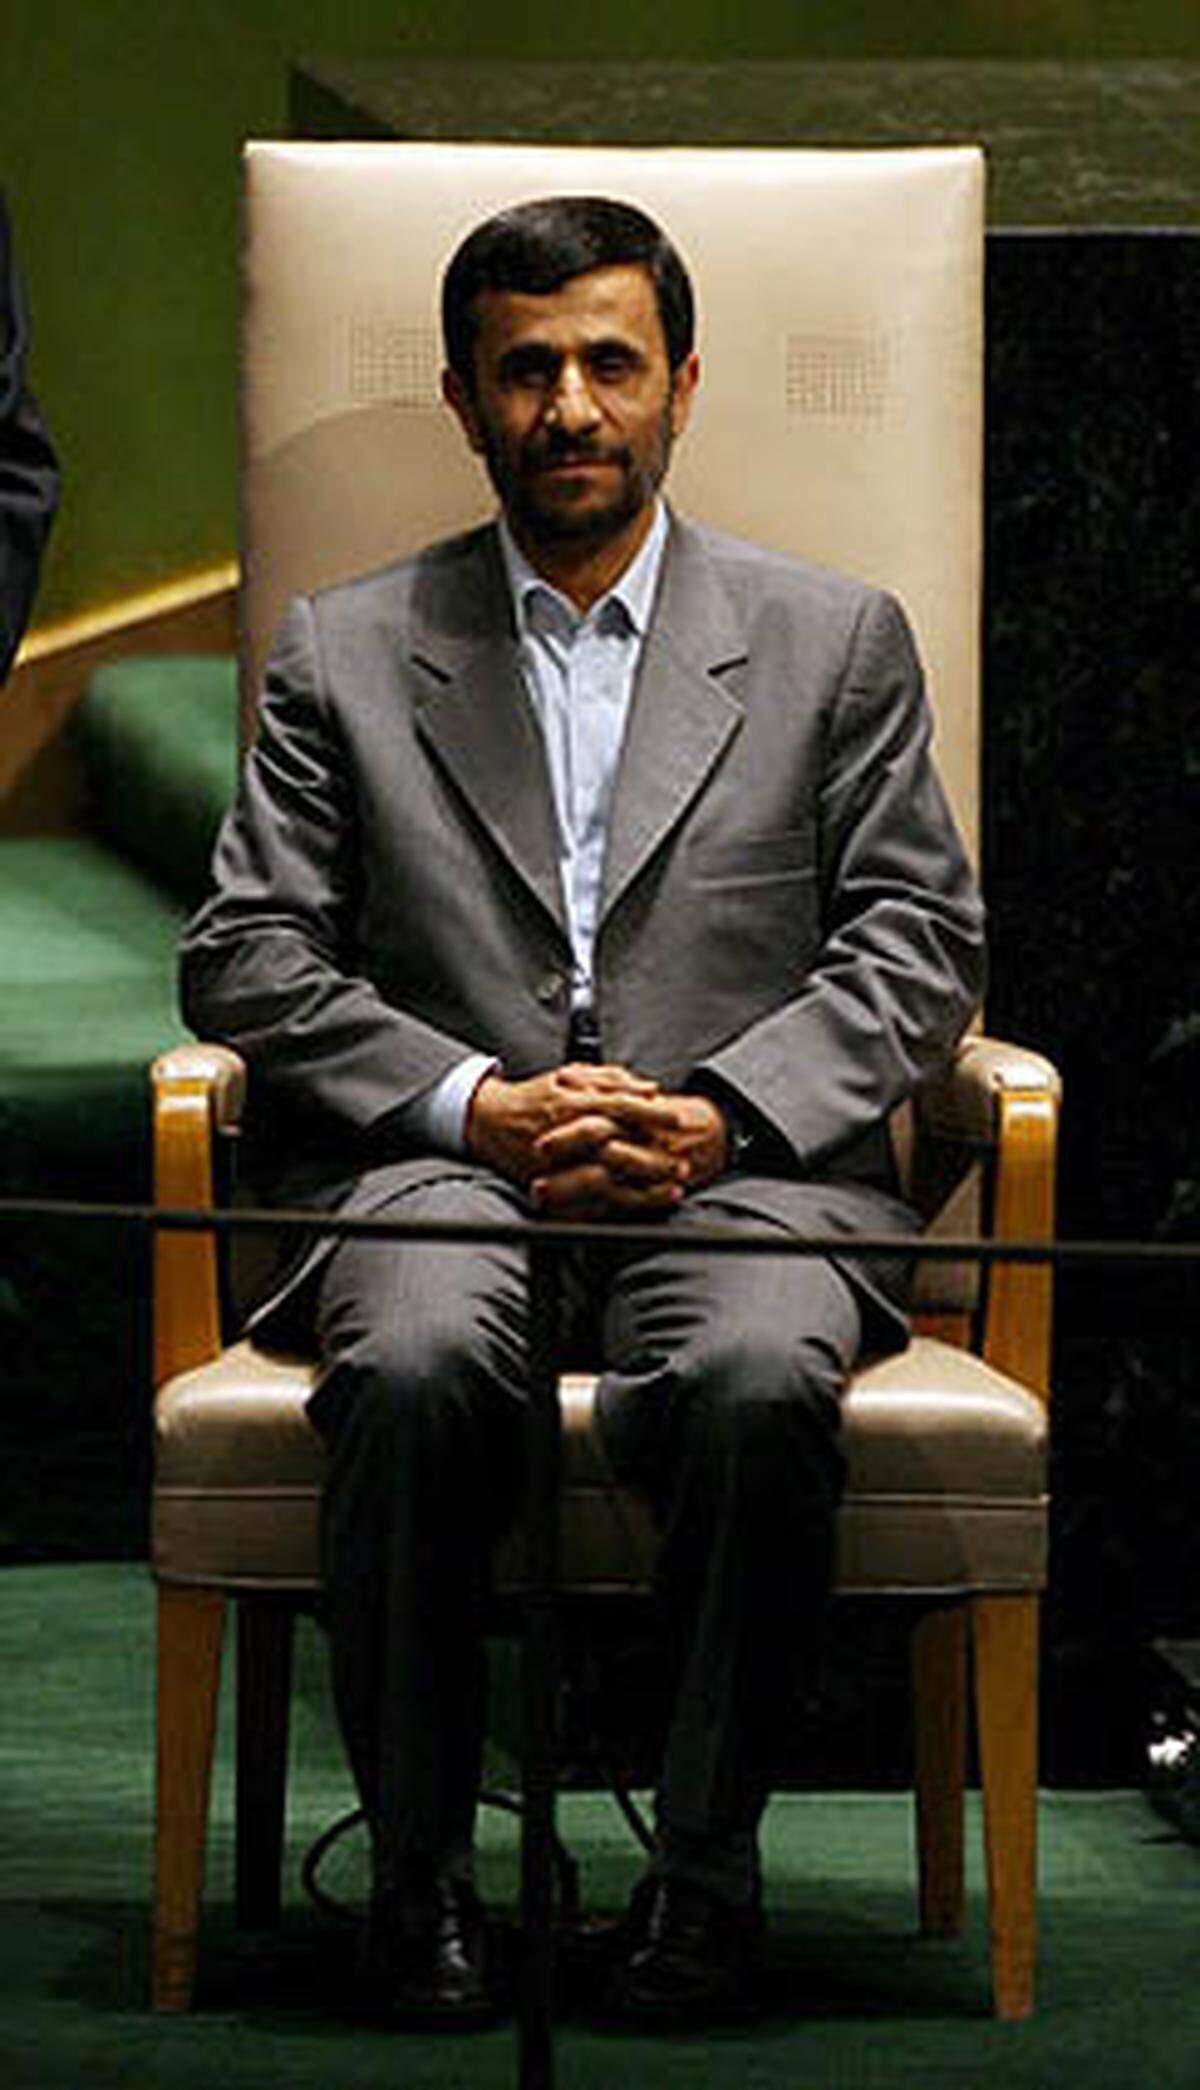 "Unglücklicherweise werden die Menschenrechte von gewissen Mächten in weitreichendem Maße verletzt, besonders von jenen, die behaupten, ihre alleinigen Verfechter zu sein." Mahmoud Ahmadinejad vor der UNO-Vollversammlung 2007 über die amerikanischen Methoden im "War on Terror".